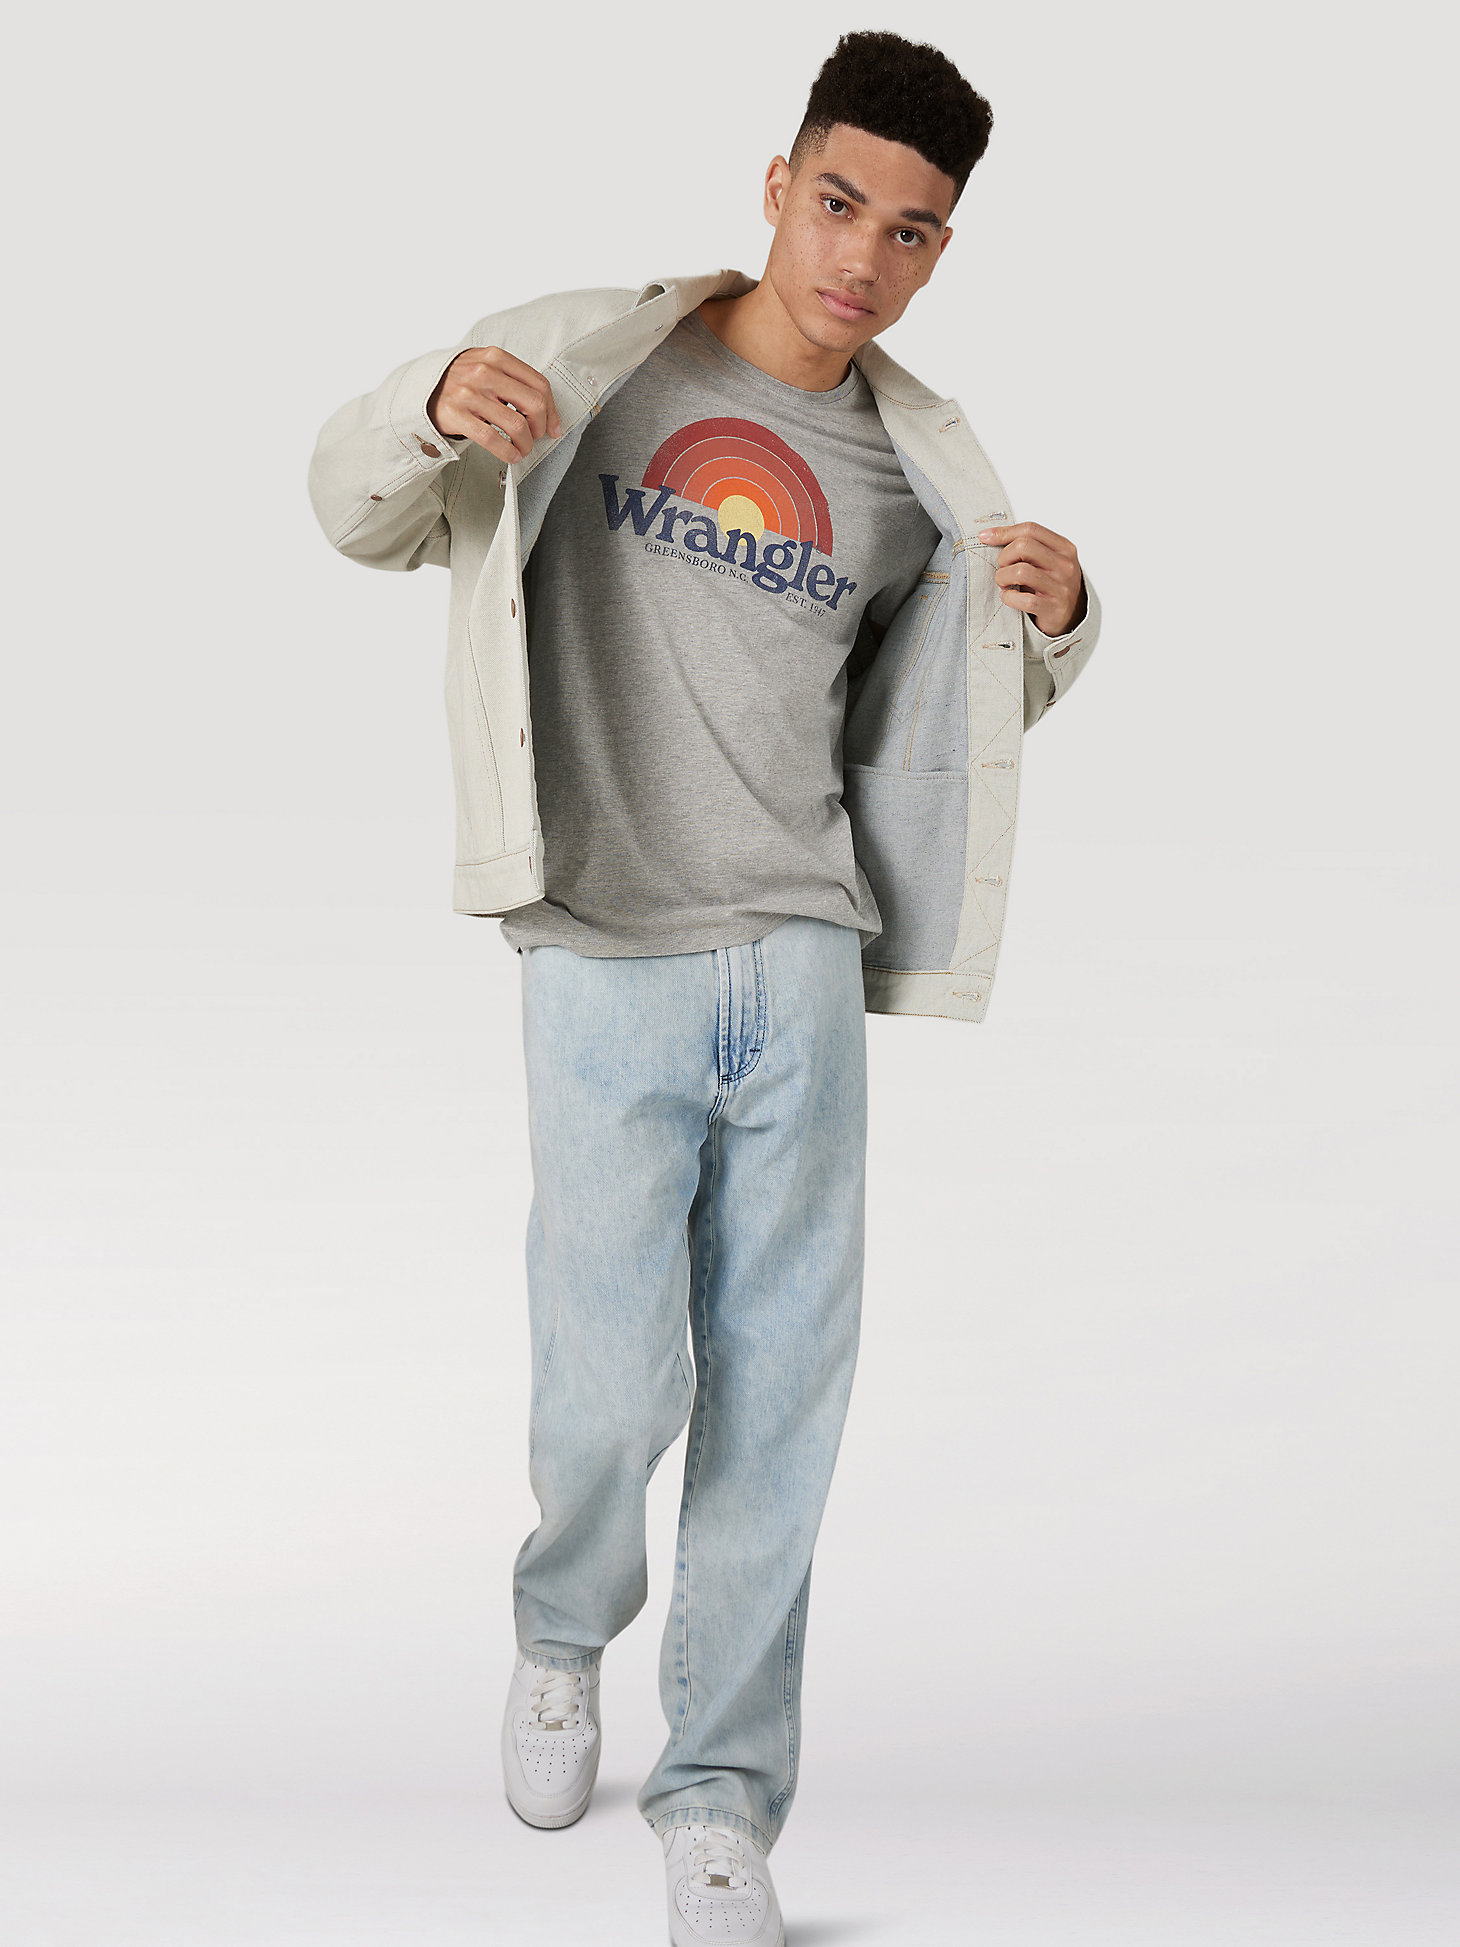 Men's Wrangler Sunrise T-Shirt in Grey alternative view 4